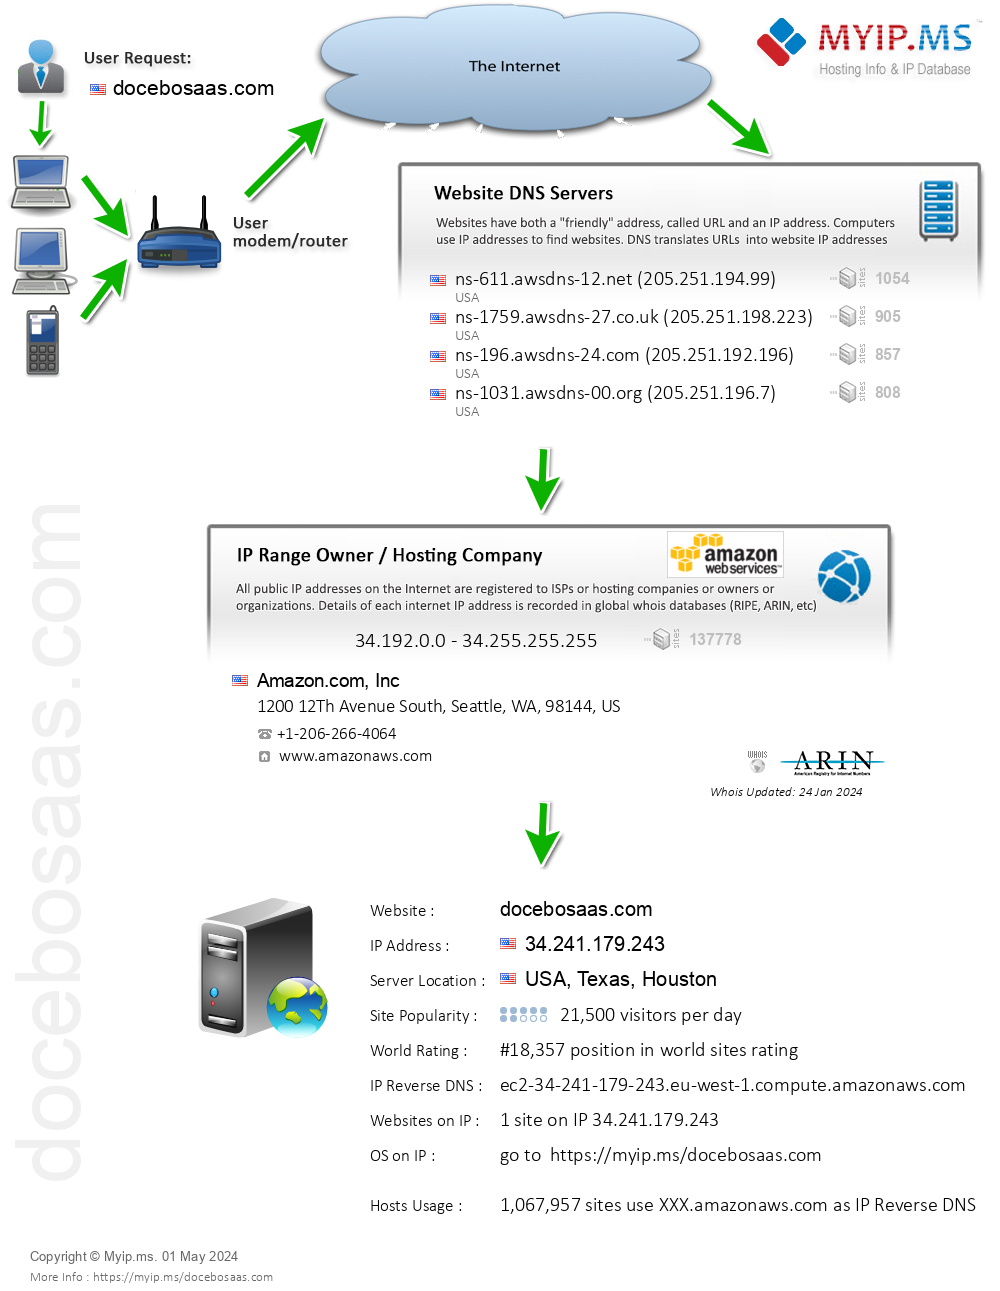 Docebosaas.com - Website Hosting Visual IP Diagram